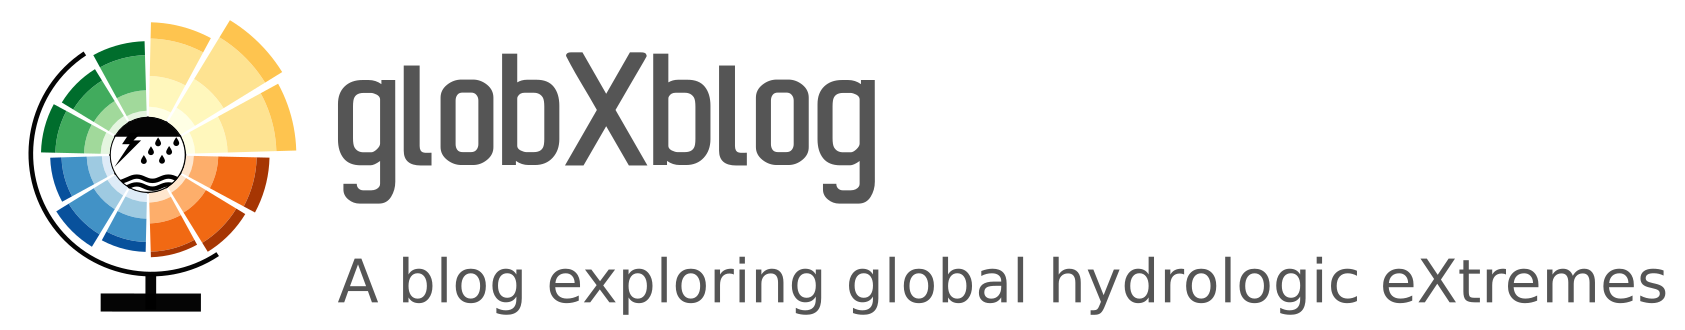 globXblog logo